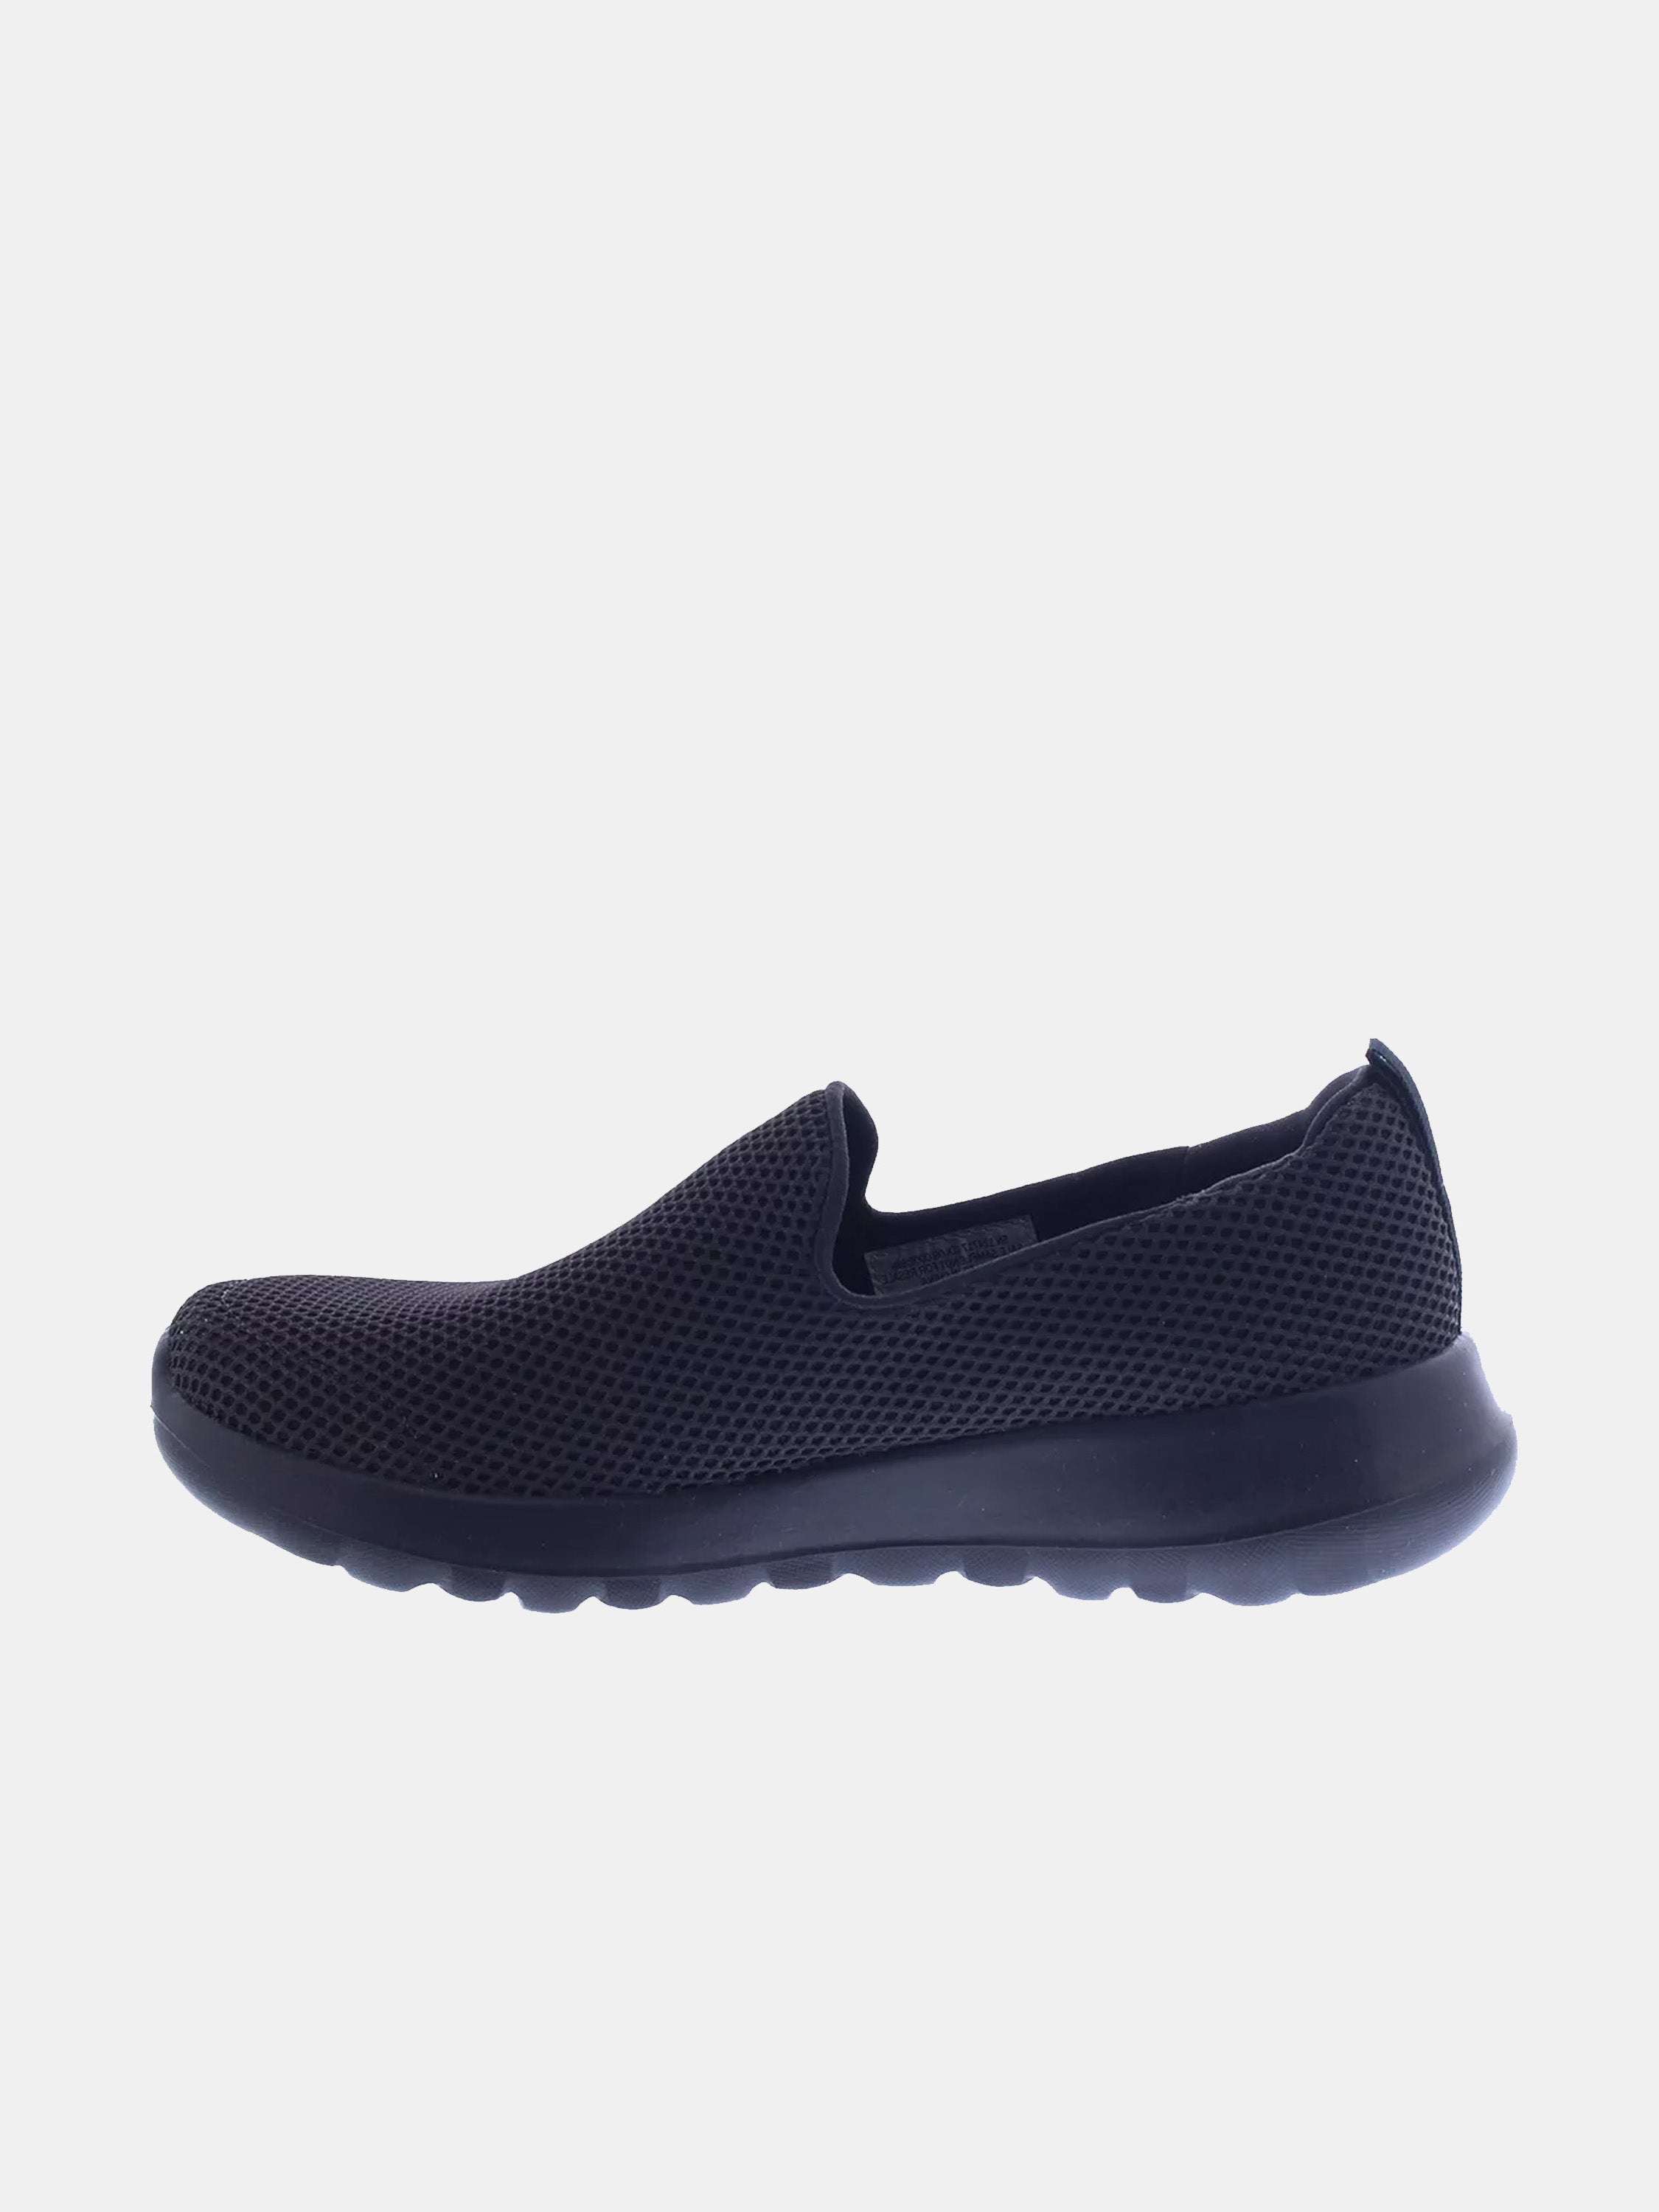 Skechers Women's GOwalk Joy Shoes #color_Black